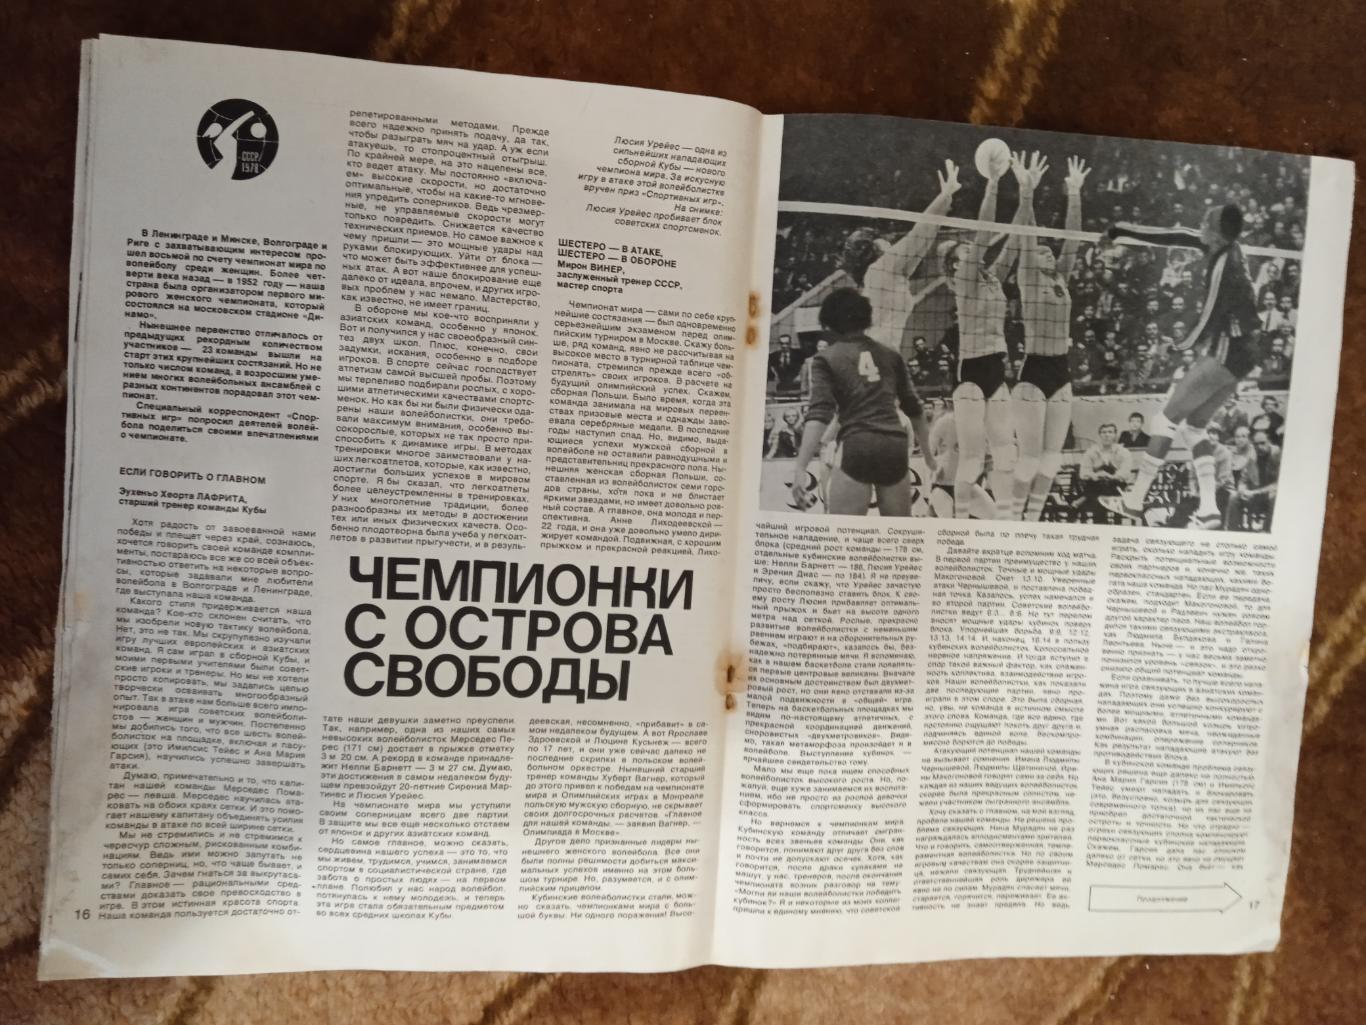 Журнал.Спортивные игры № 11 1978 г.Футбол,хоккей,волейбол,регби.ЧМ 78 Аргентина. 3